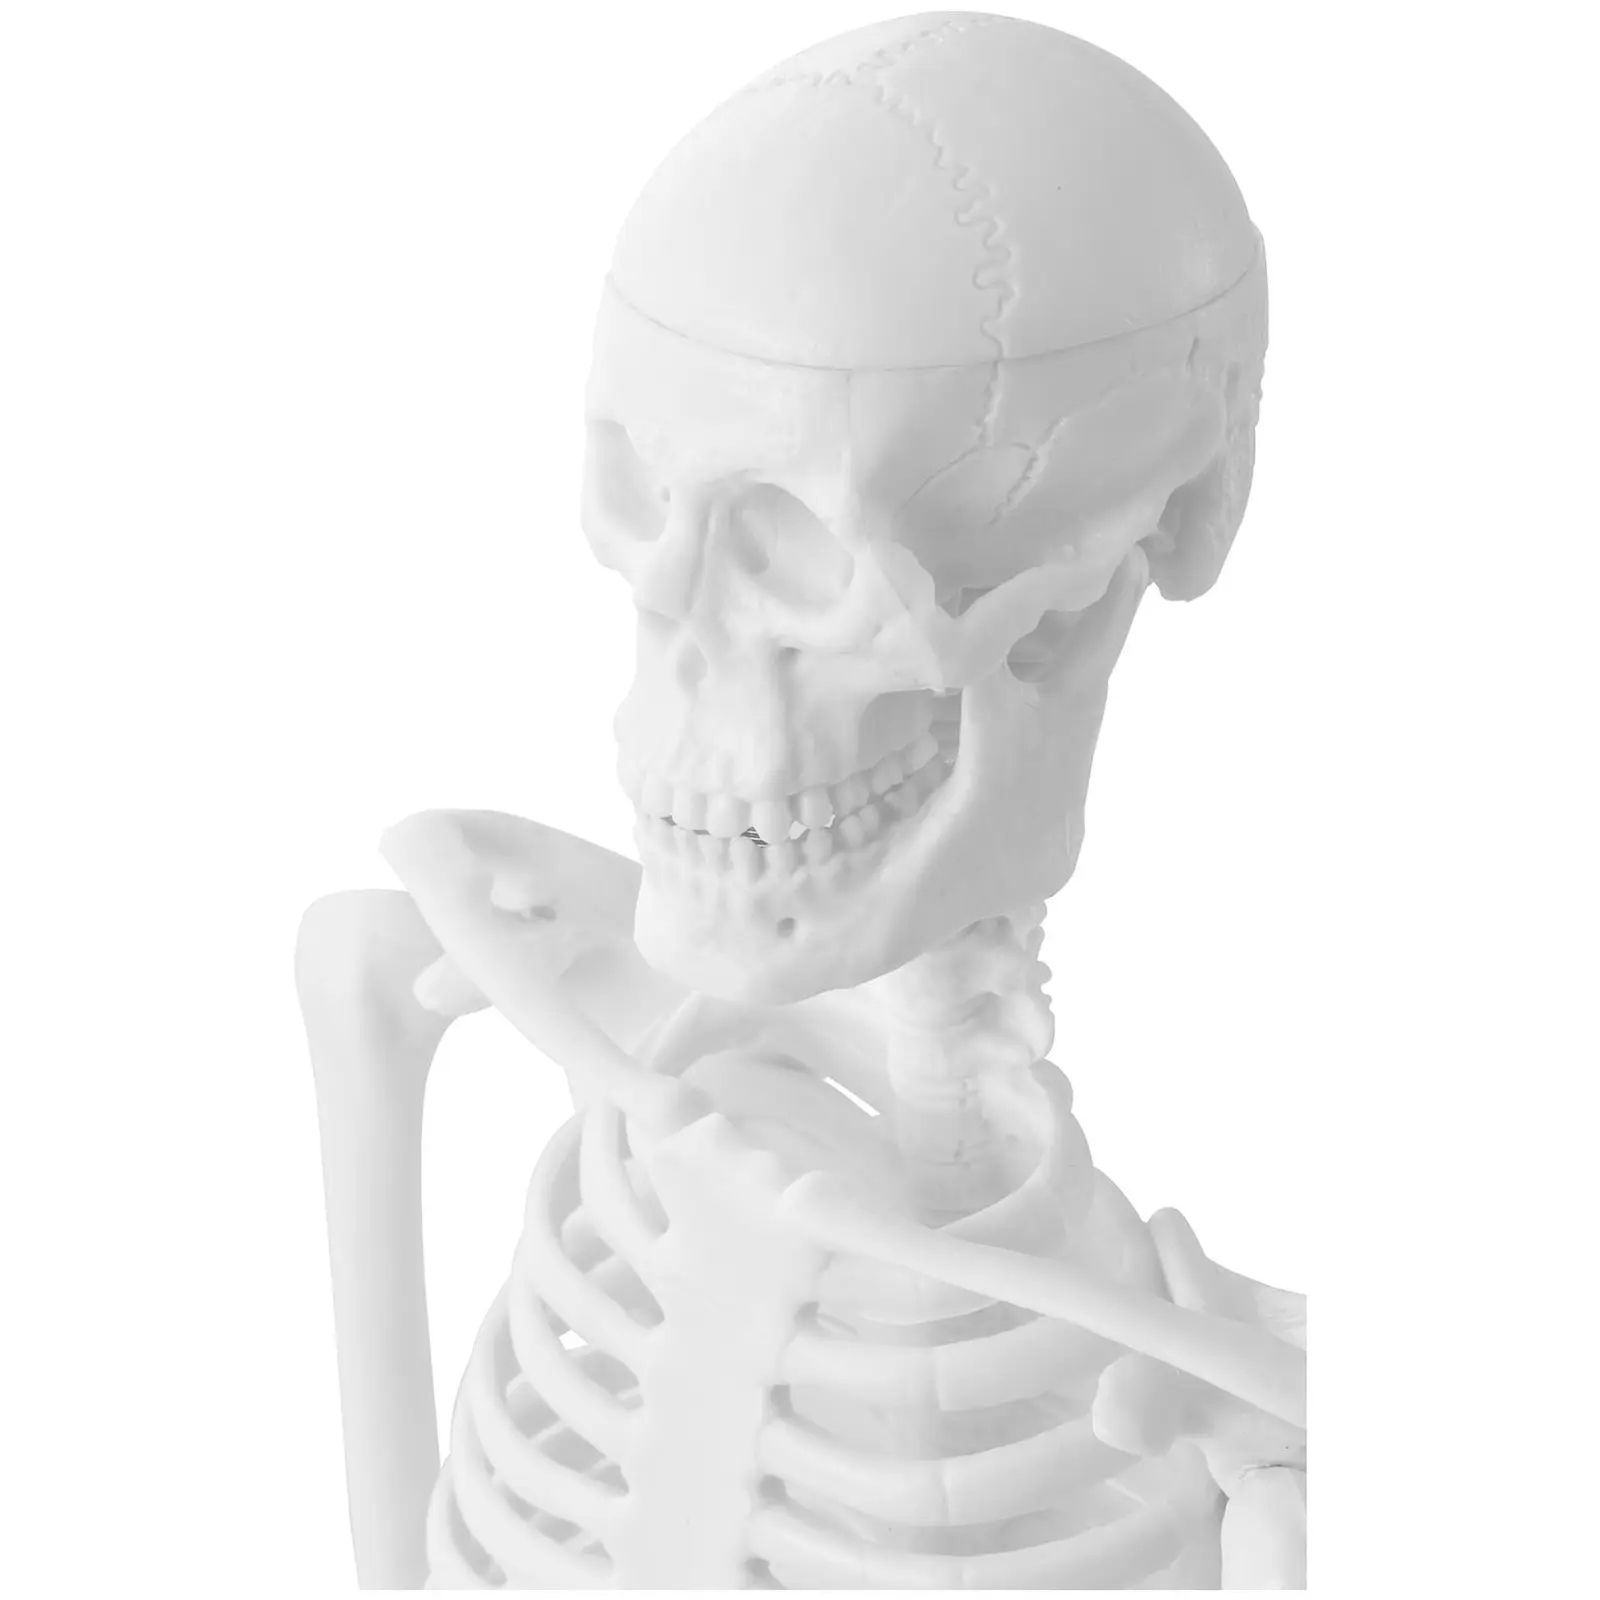 Mini maquette du squelette humain - 45 cm - Échelle 1:4